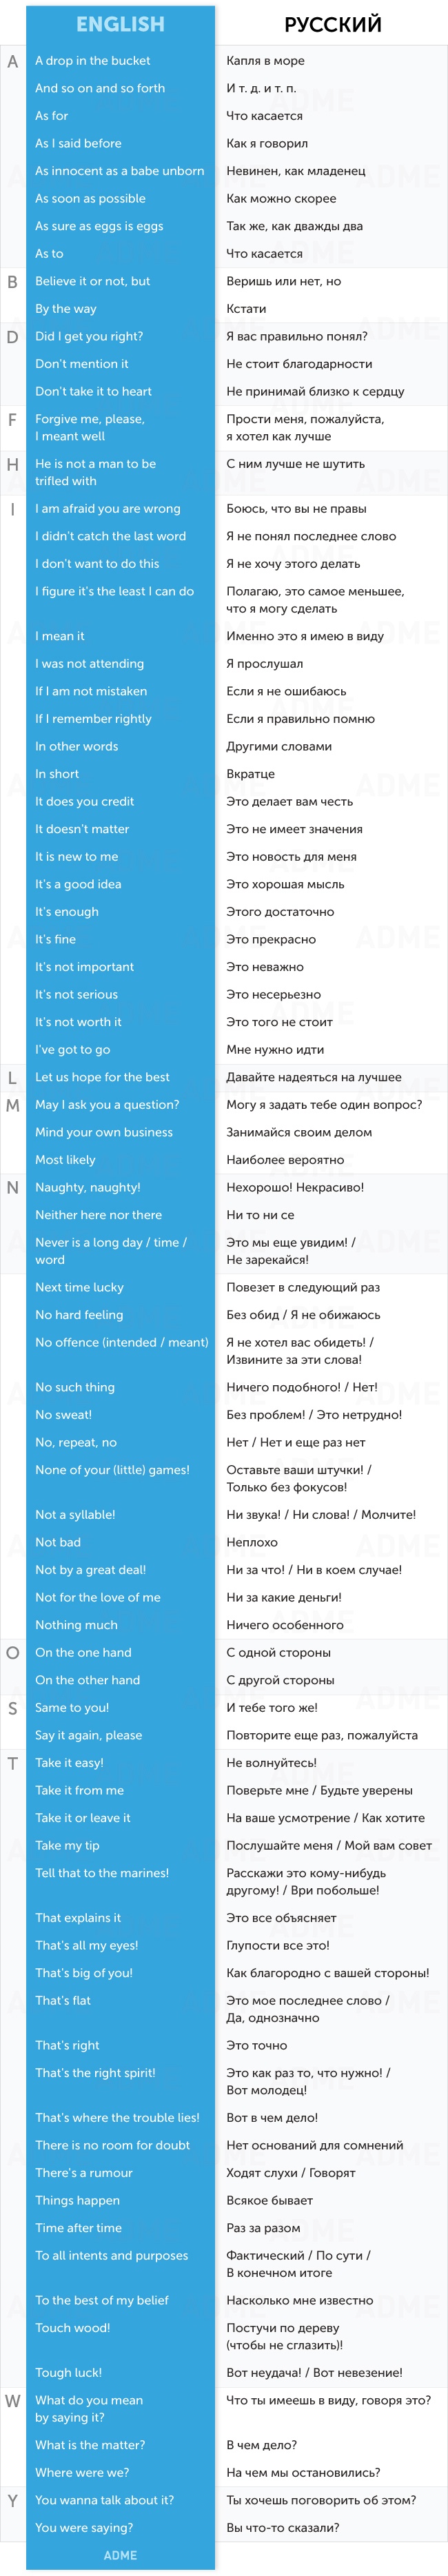 80 корисних фраз, щоб підтримати діалог англійською